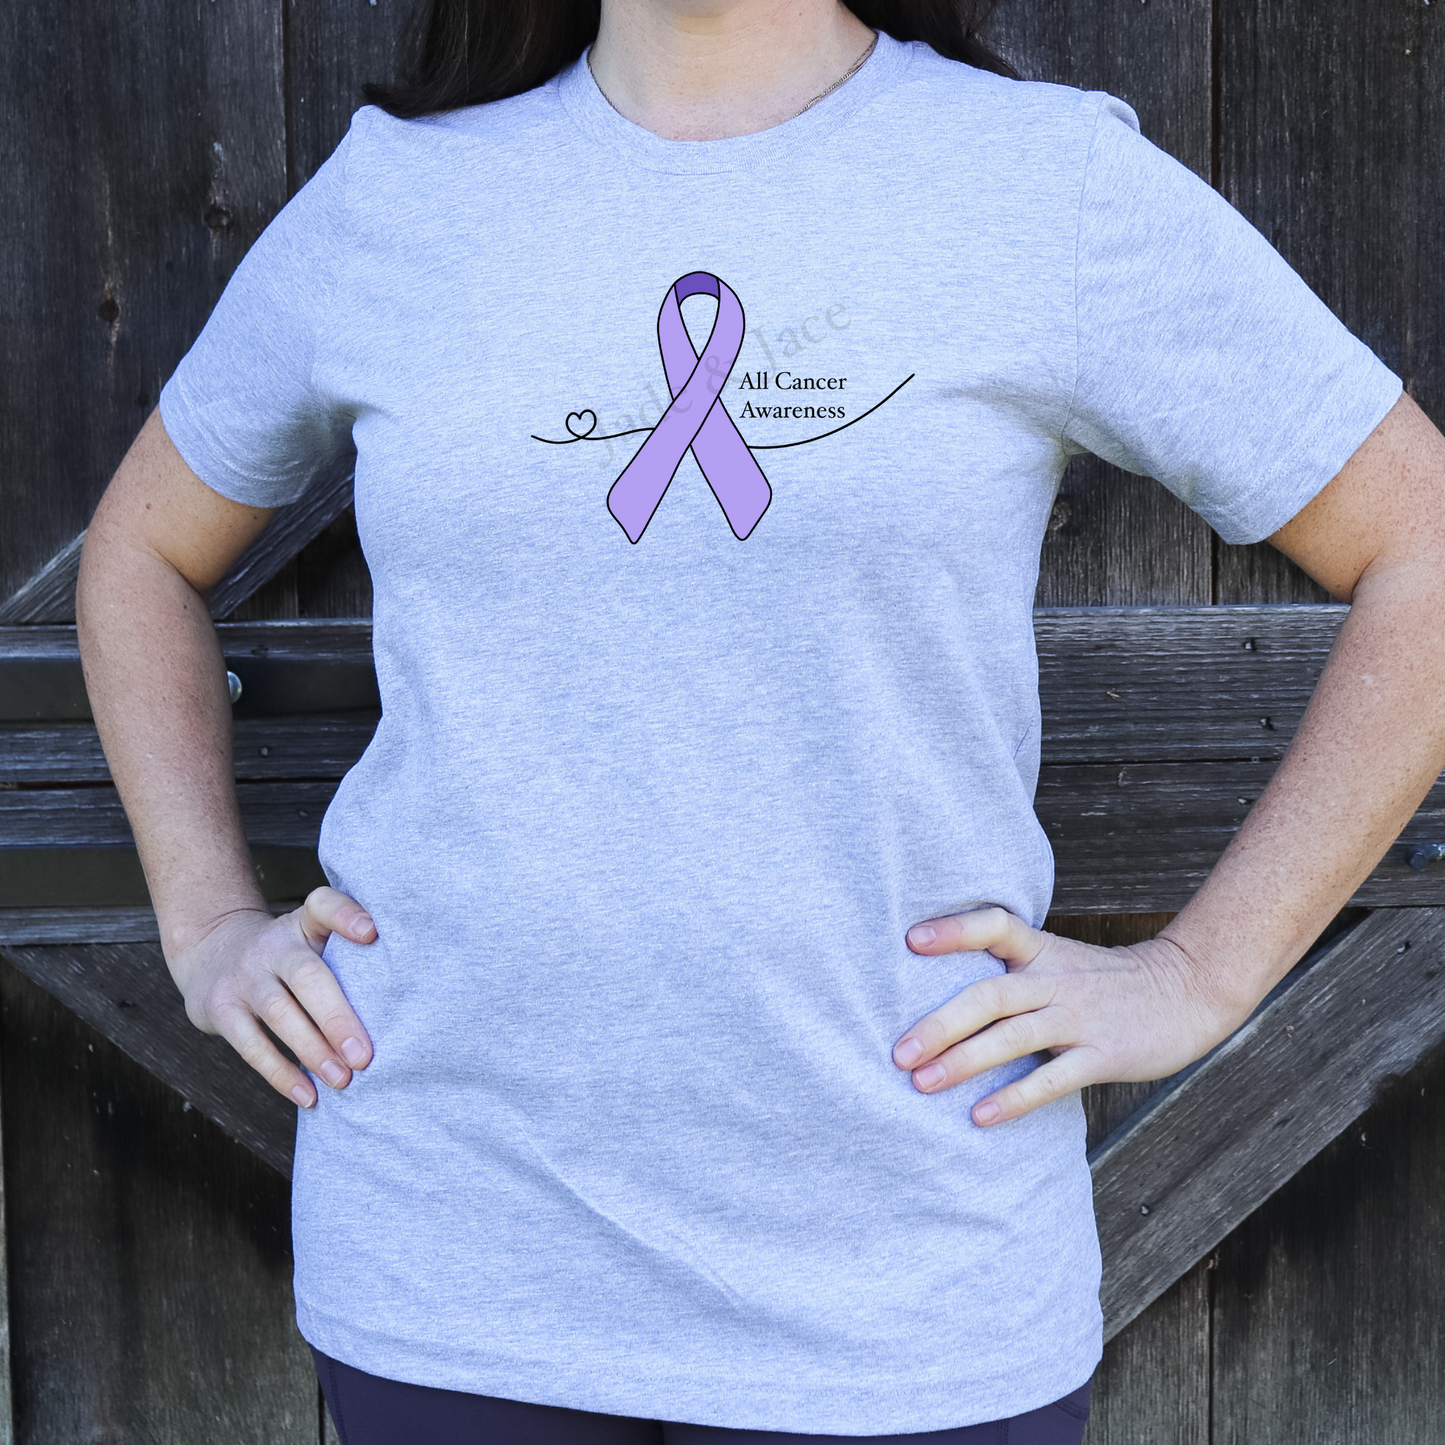 All Cancer Awareness T-Shirt